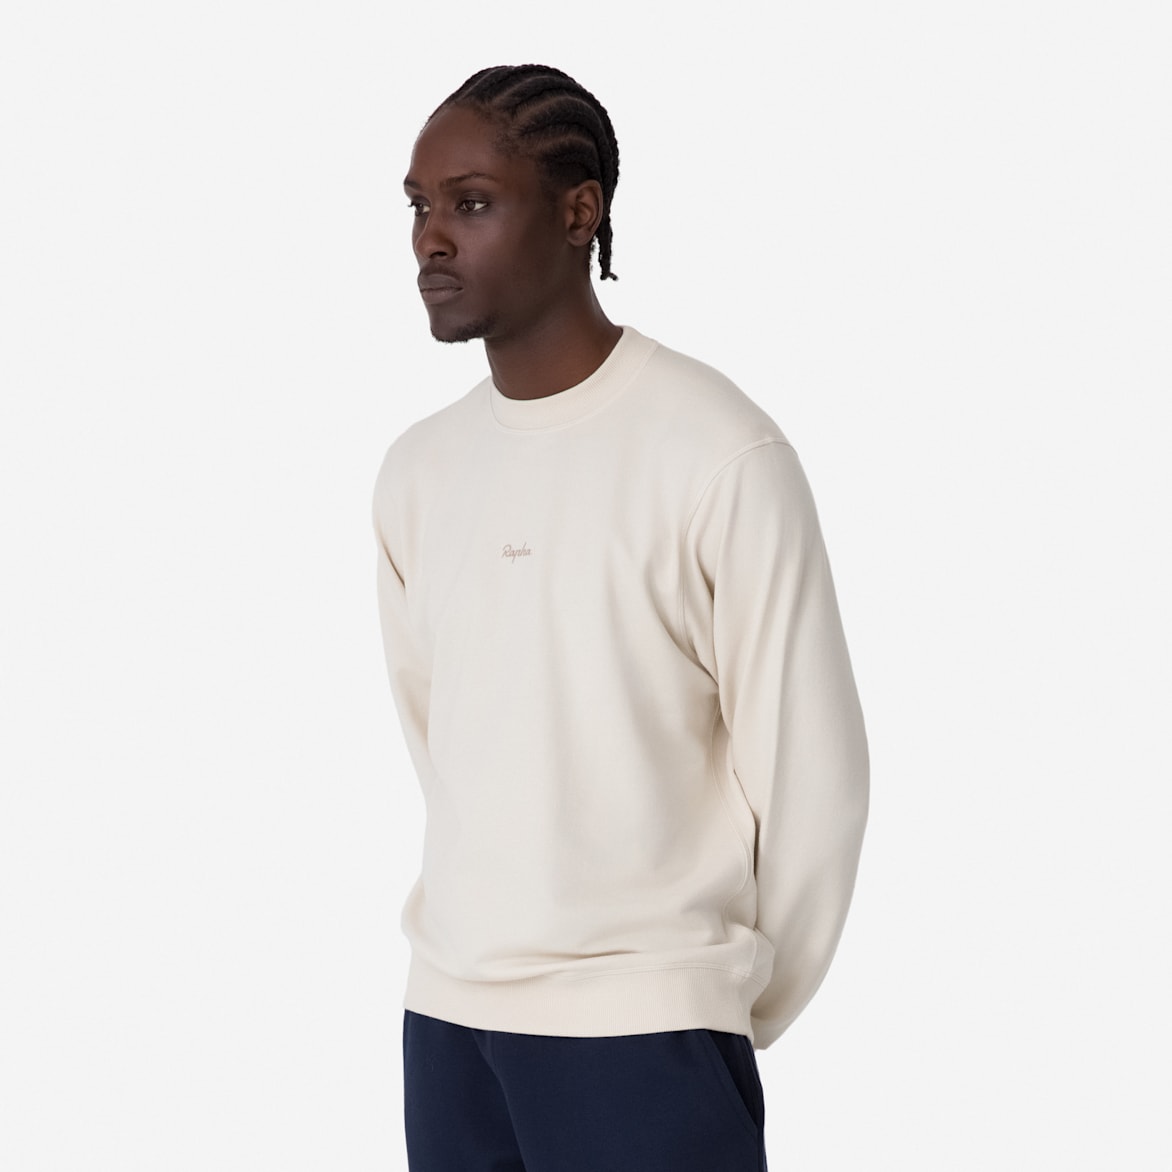 Men's Cotton Sweatshirt